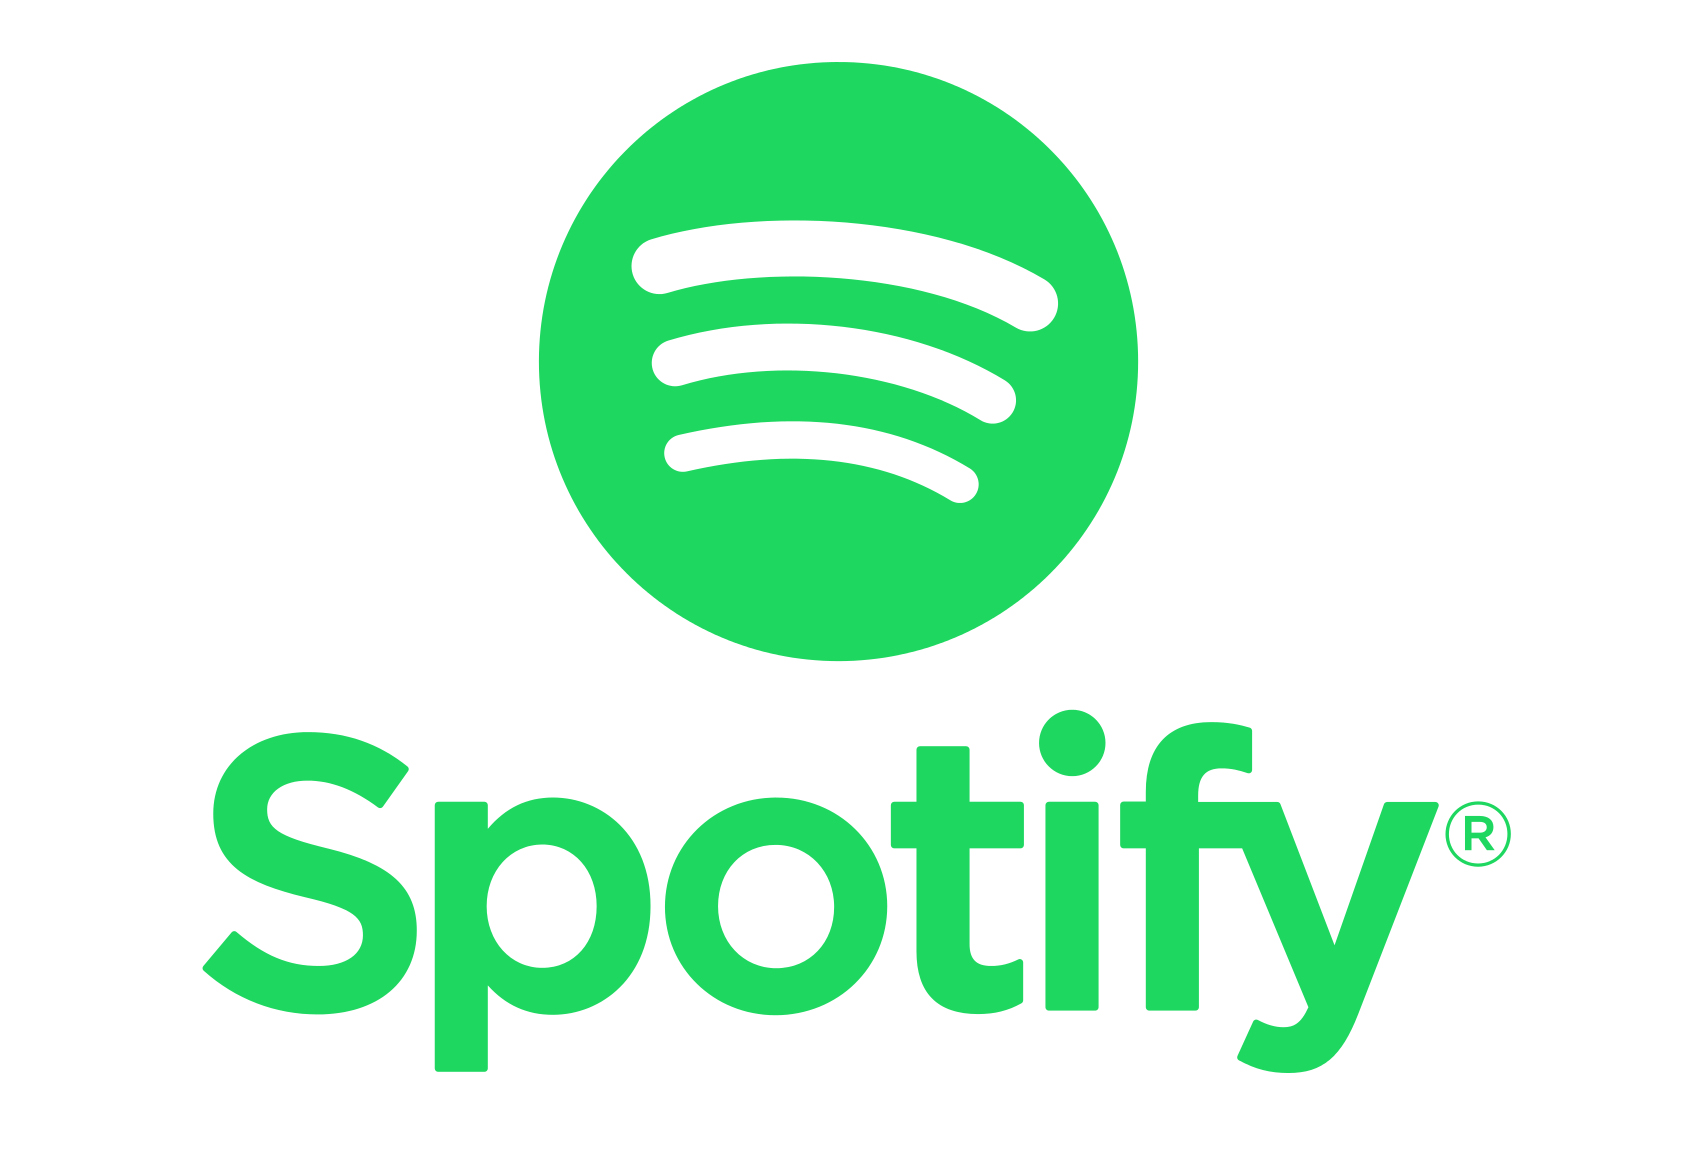 Spotify potrafi teraz wyszukiwa piosenki po ich tekstach